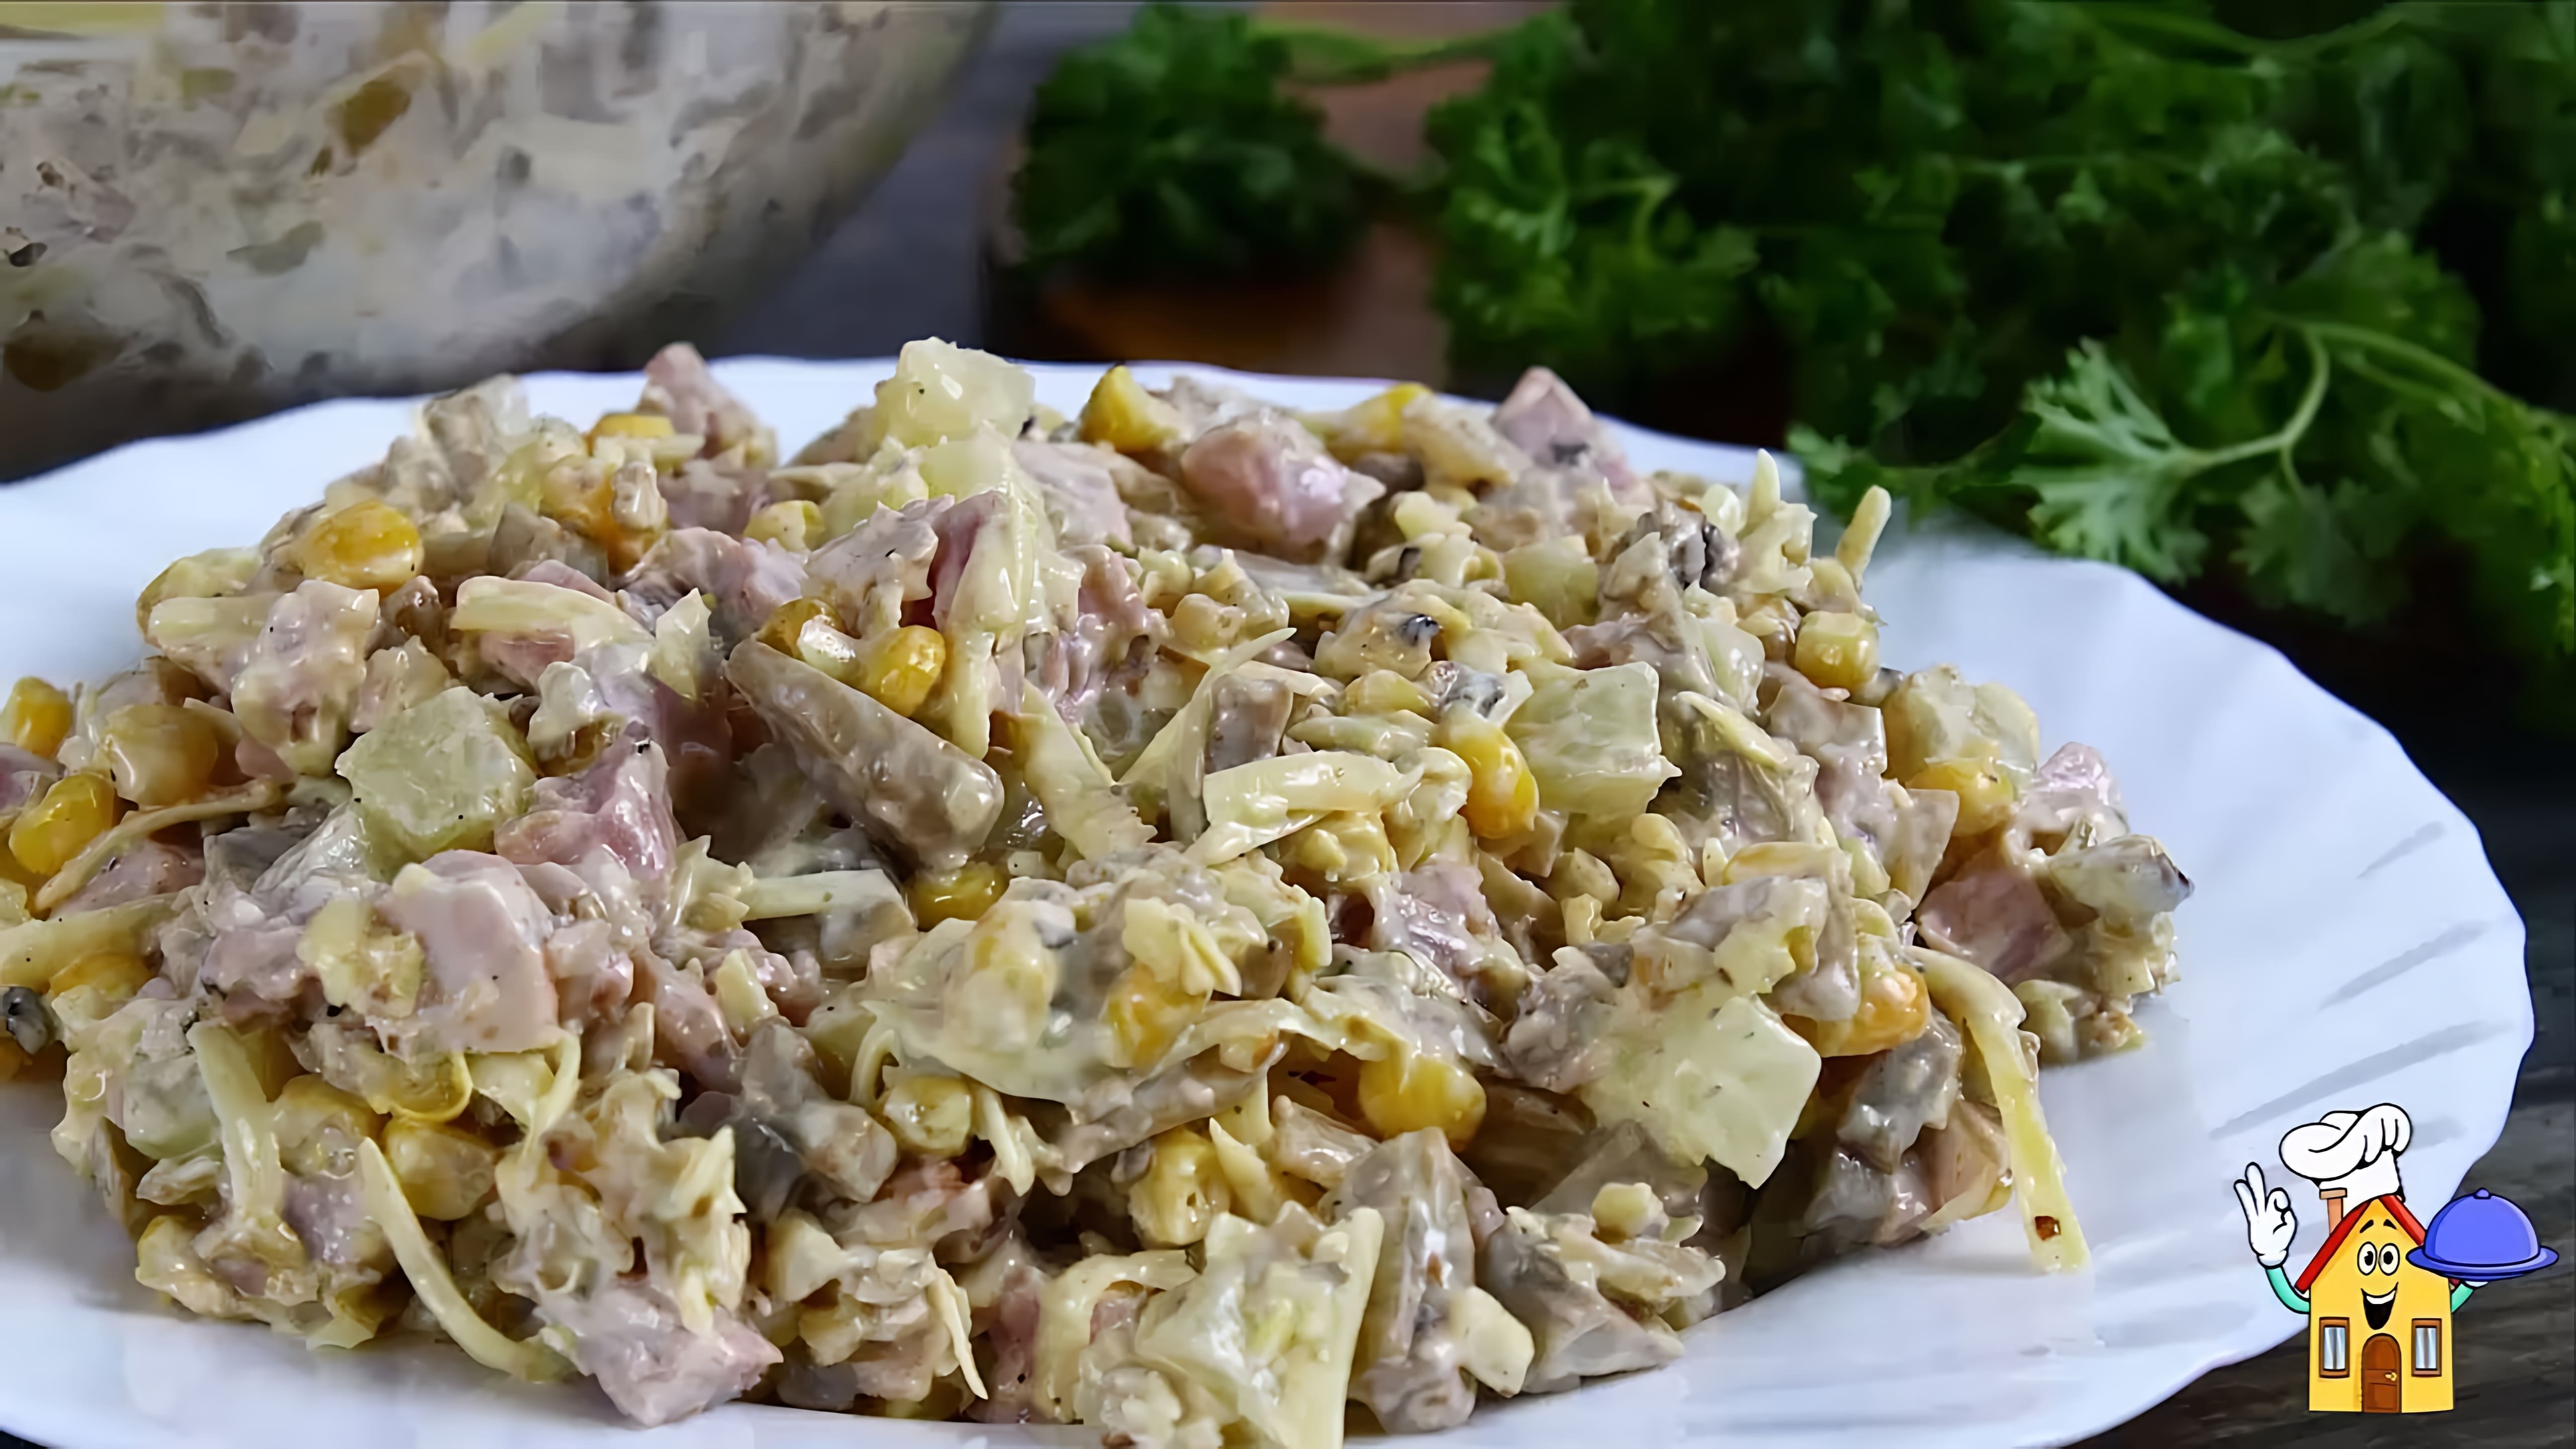 В этом видео демонстрируется рецепт приготовления салата "Нежный"